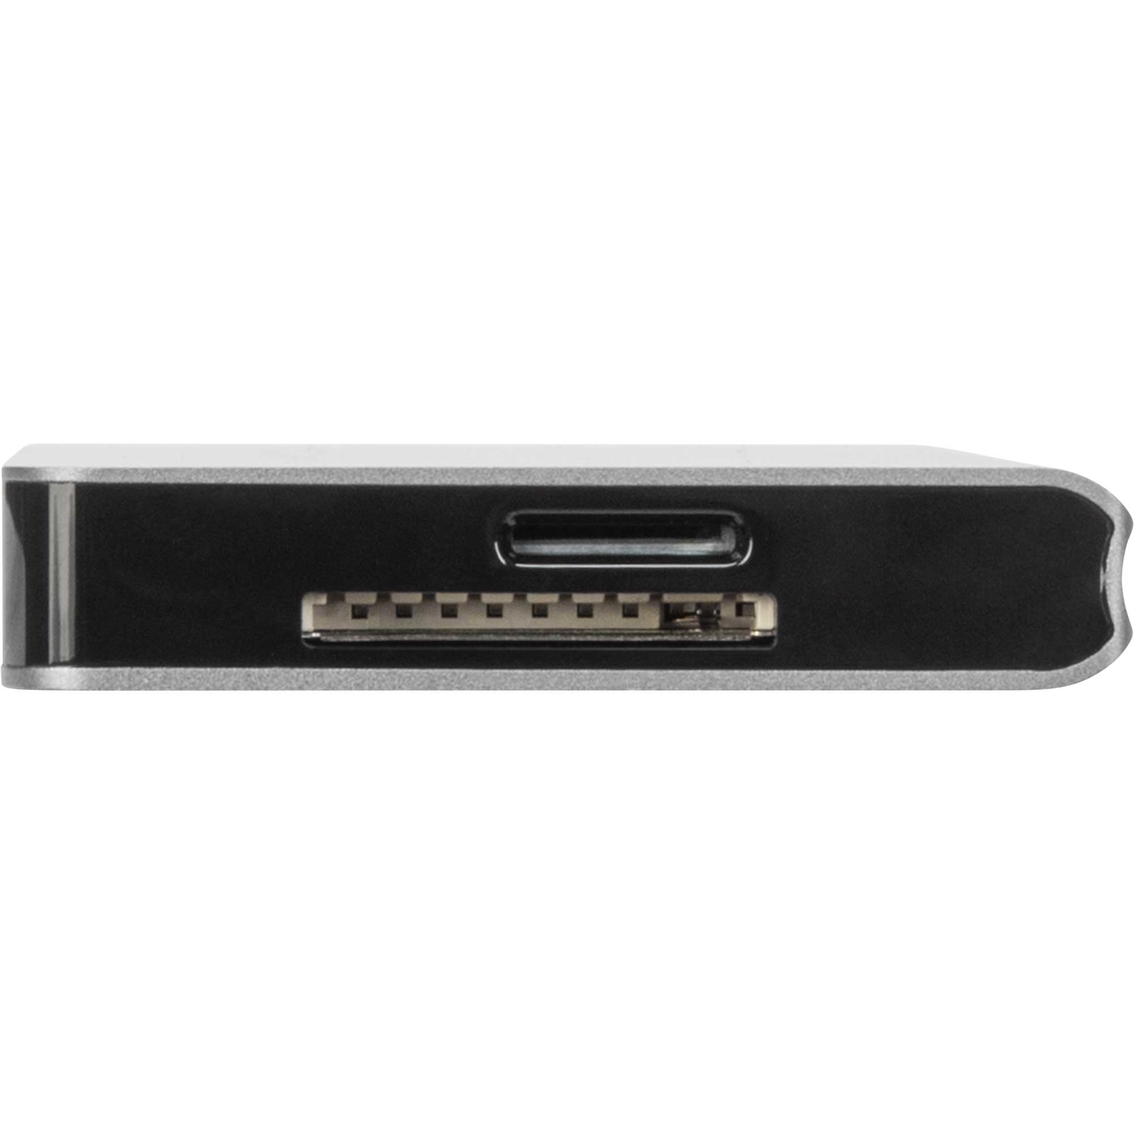 Targus USB C Single Video Multi Port Hub - Image 7 of 7